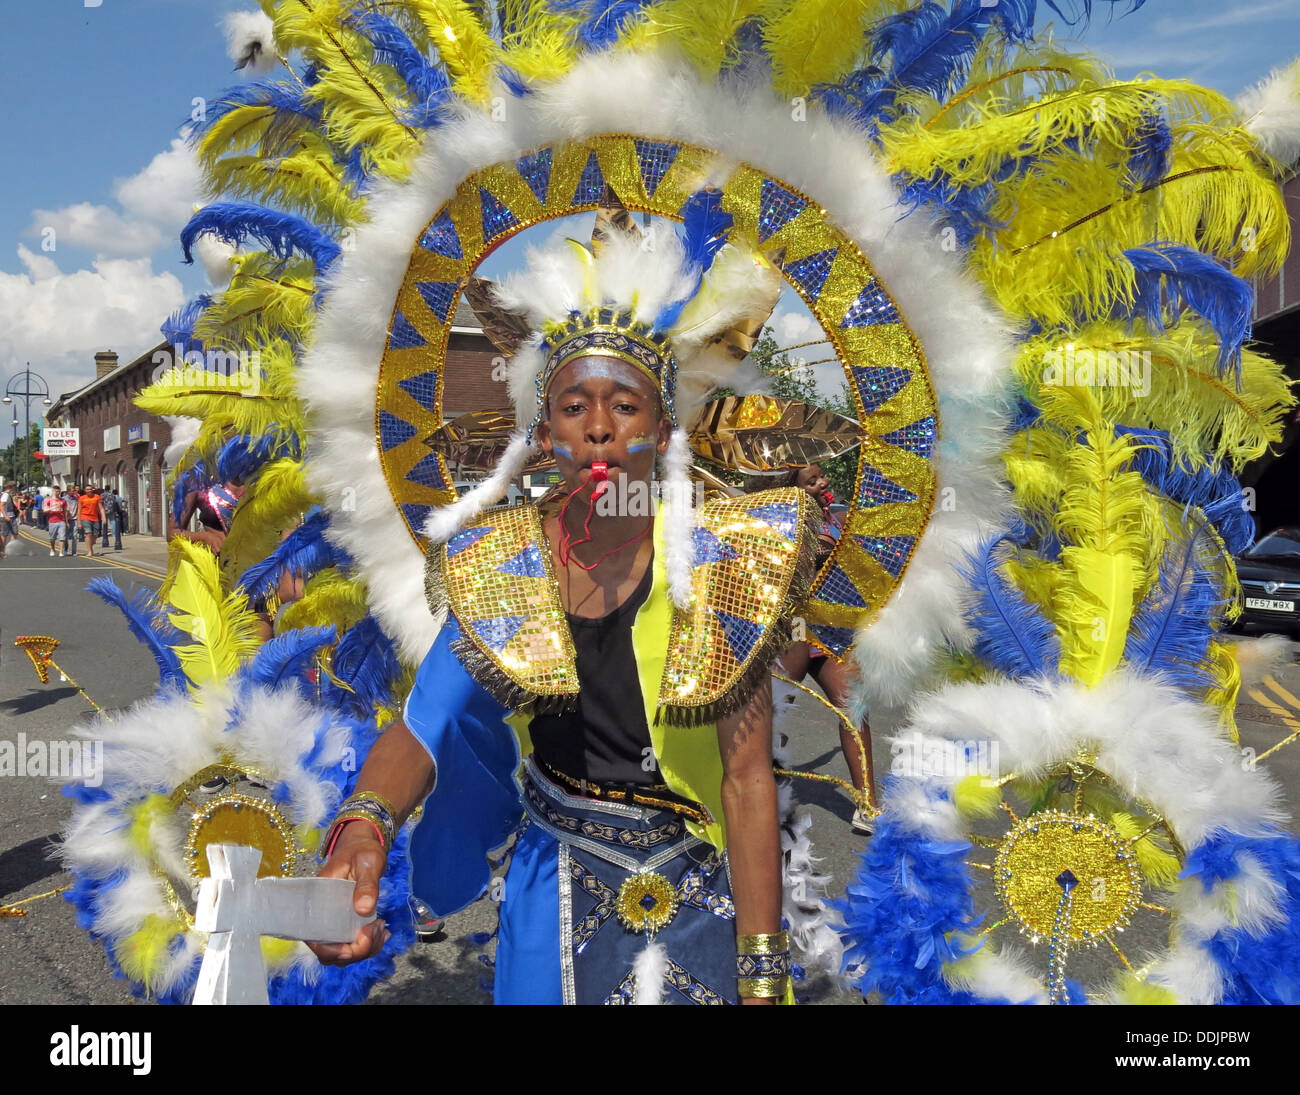 Kostümierte Tänzer in blau gelb aus Huddersfield Karneval 2013 Afrika Karibik Parade Straßenfest Stockfoto